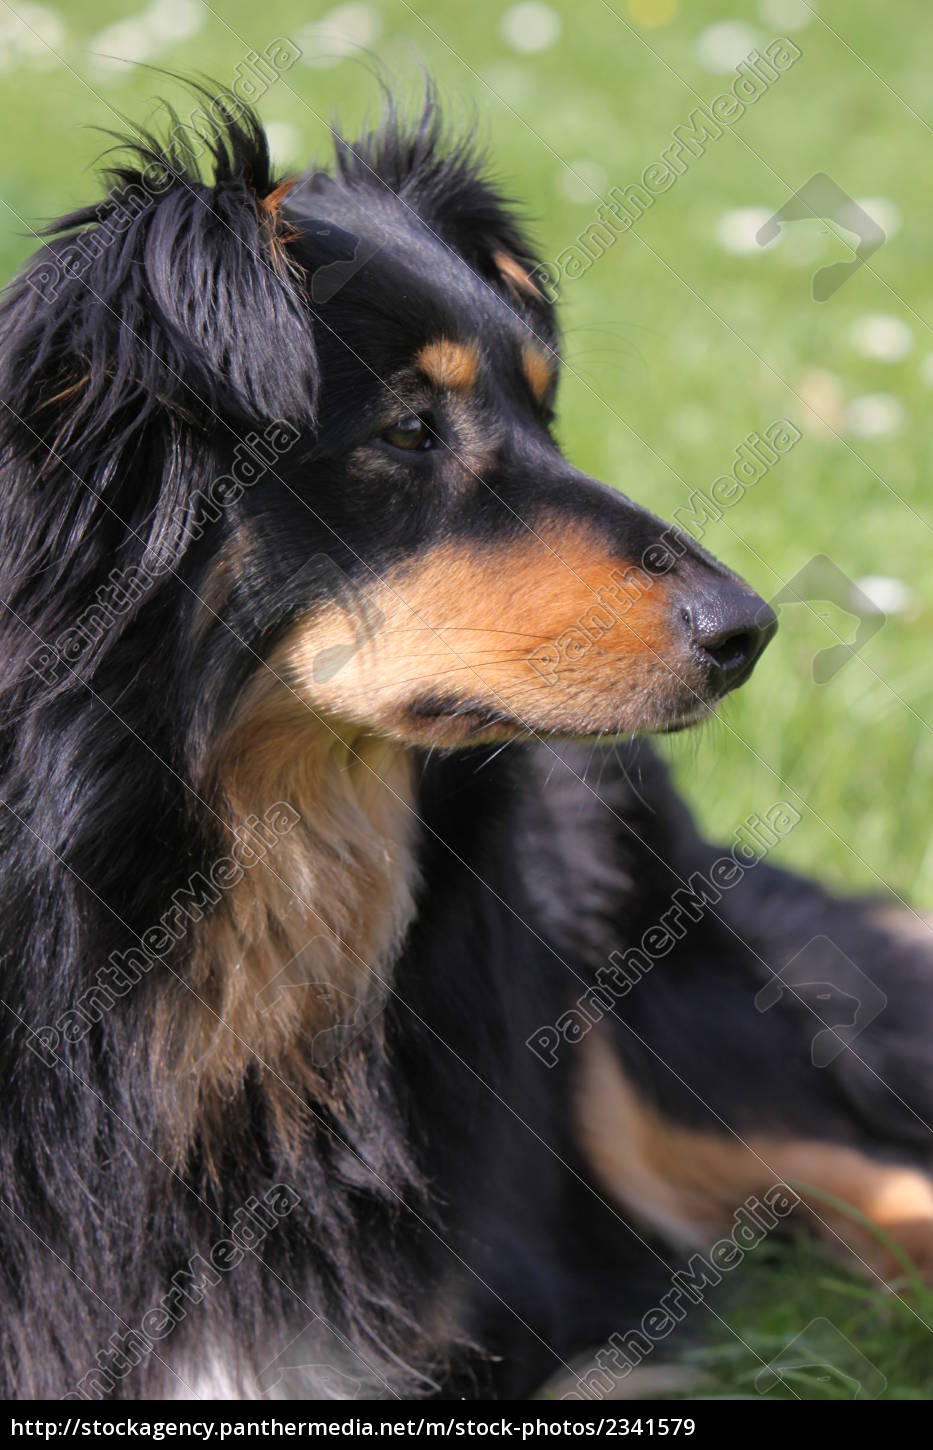 stress Minearbejder Afdæk sort-brun køter hund - Royalty Free Image #2341579 | PantherMedia  Billedbureau